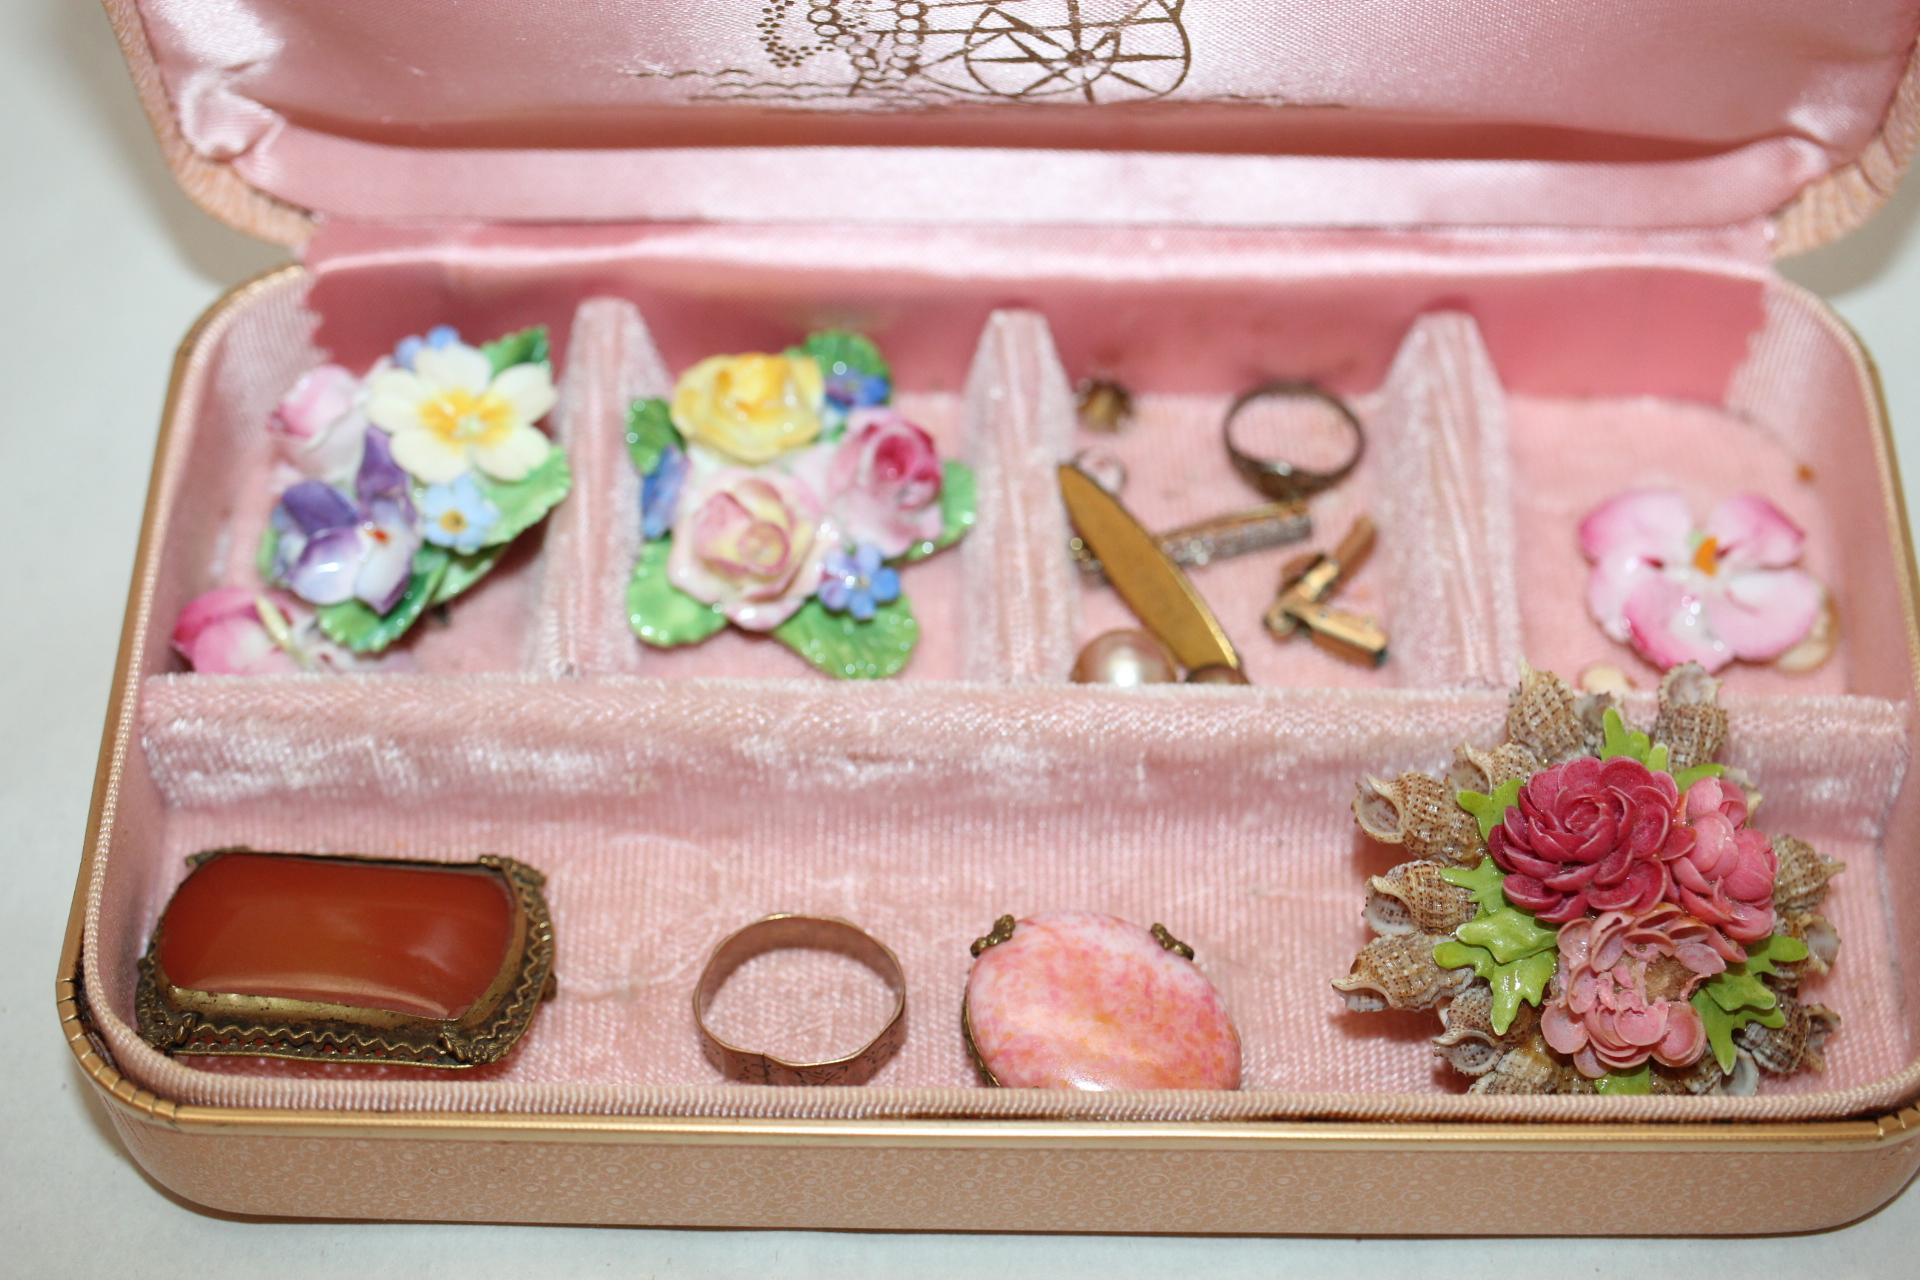 Assorted Vintage Jewelry & Box, 7" x 4" x 1 1/2"